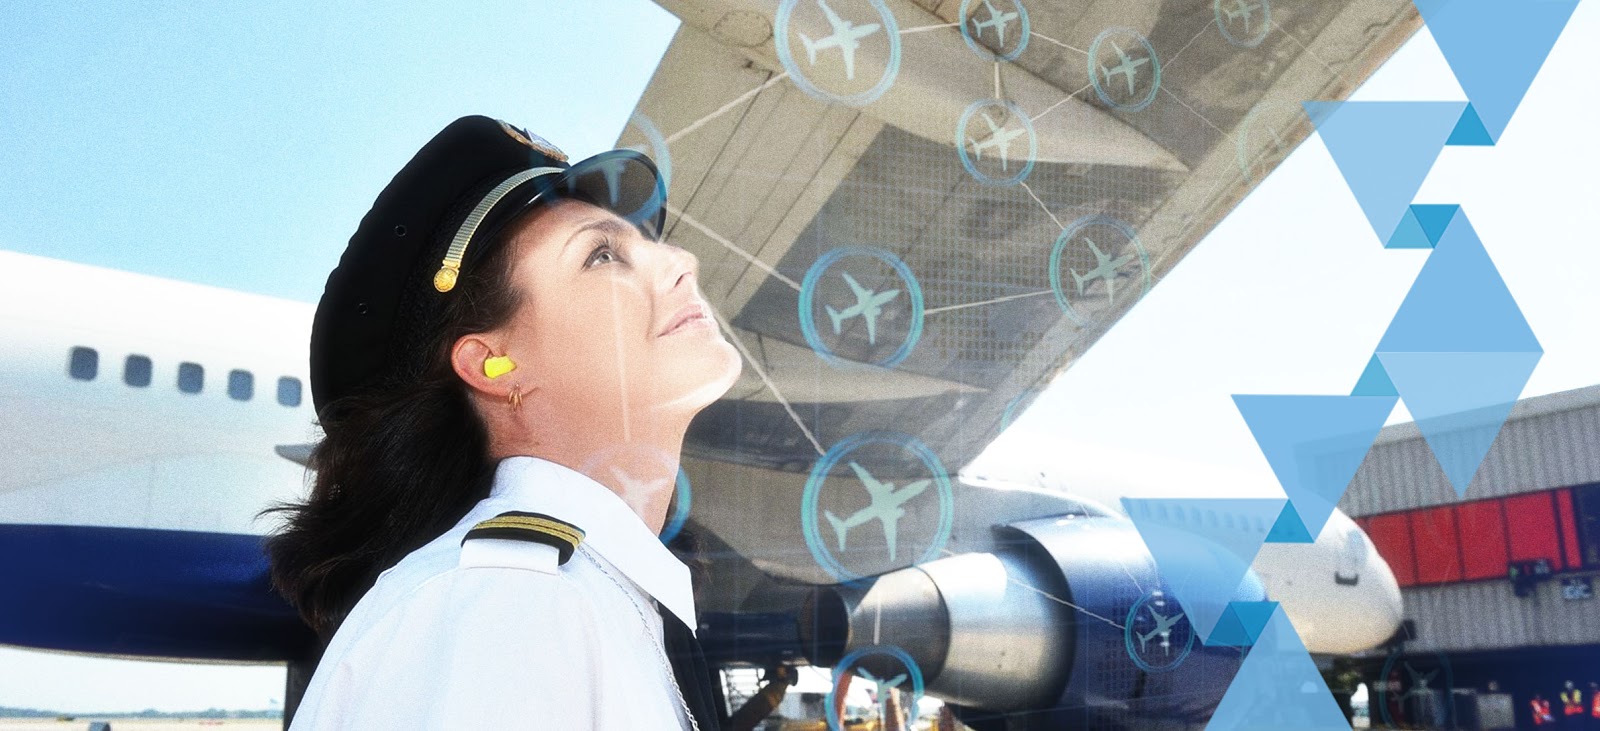 Igualdad de género, el reto de la industria aeronáutica en 2030